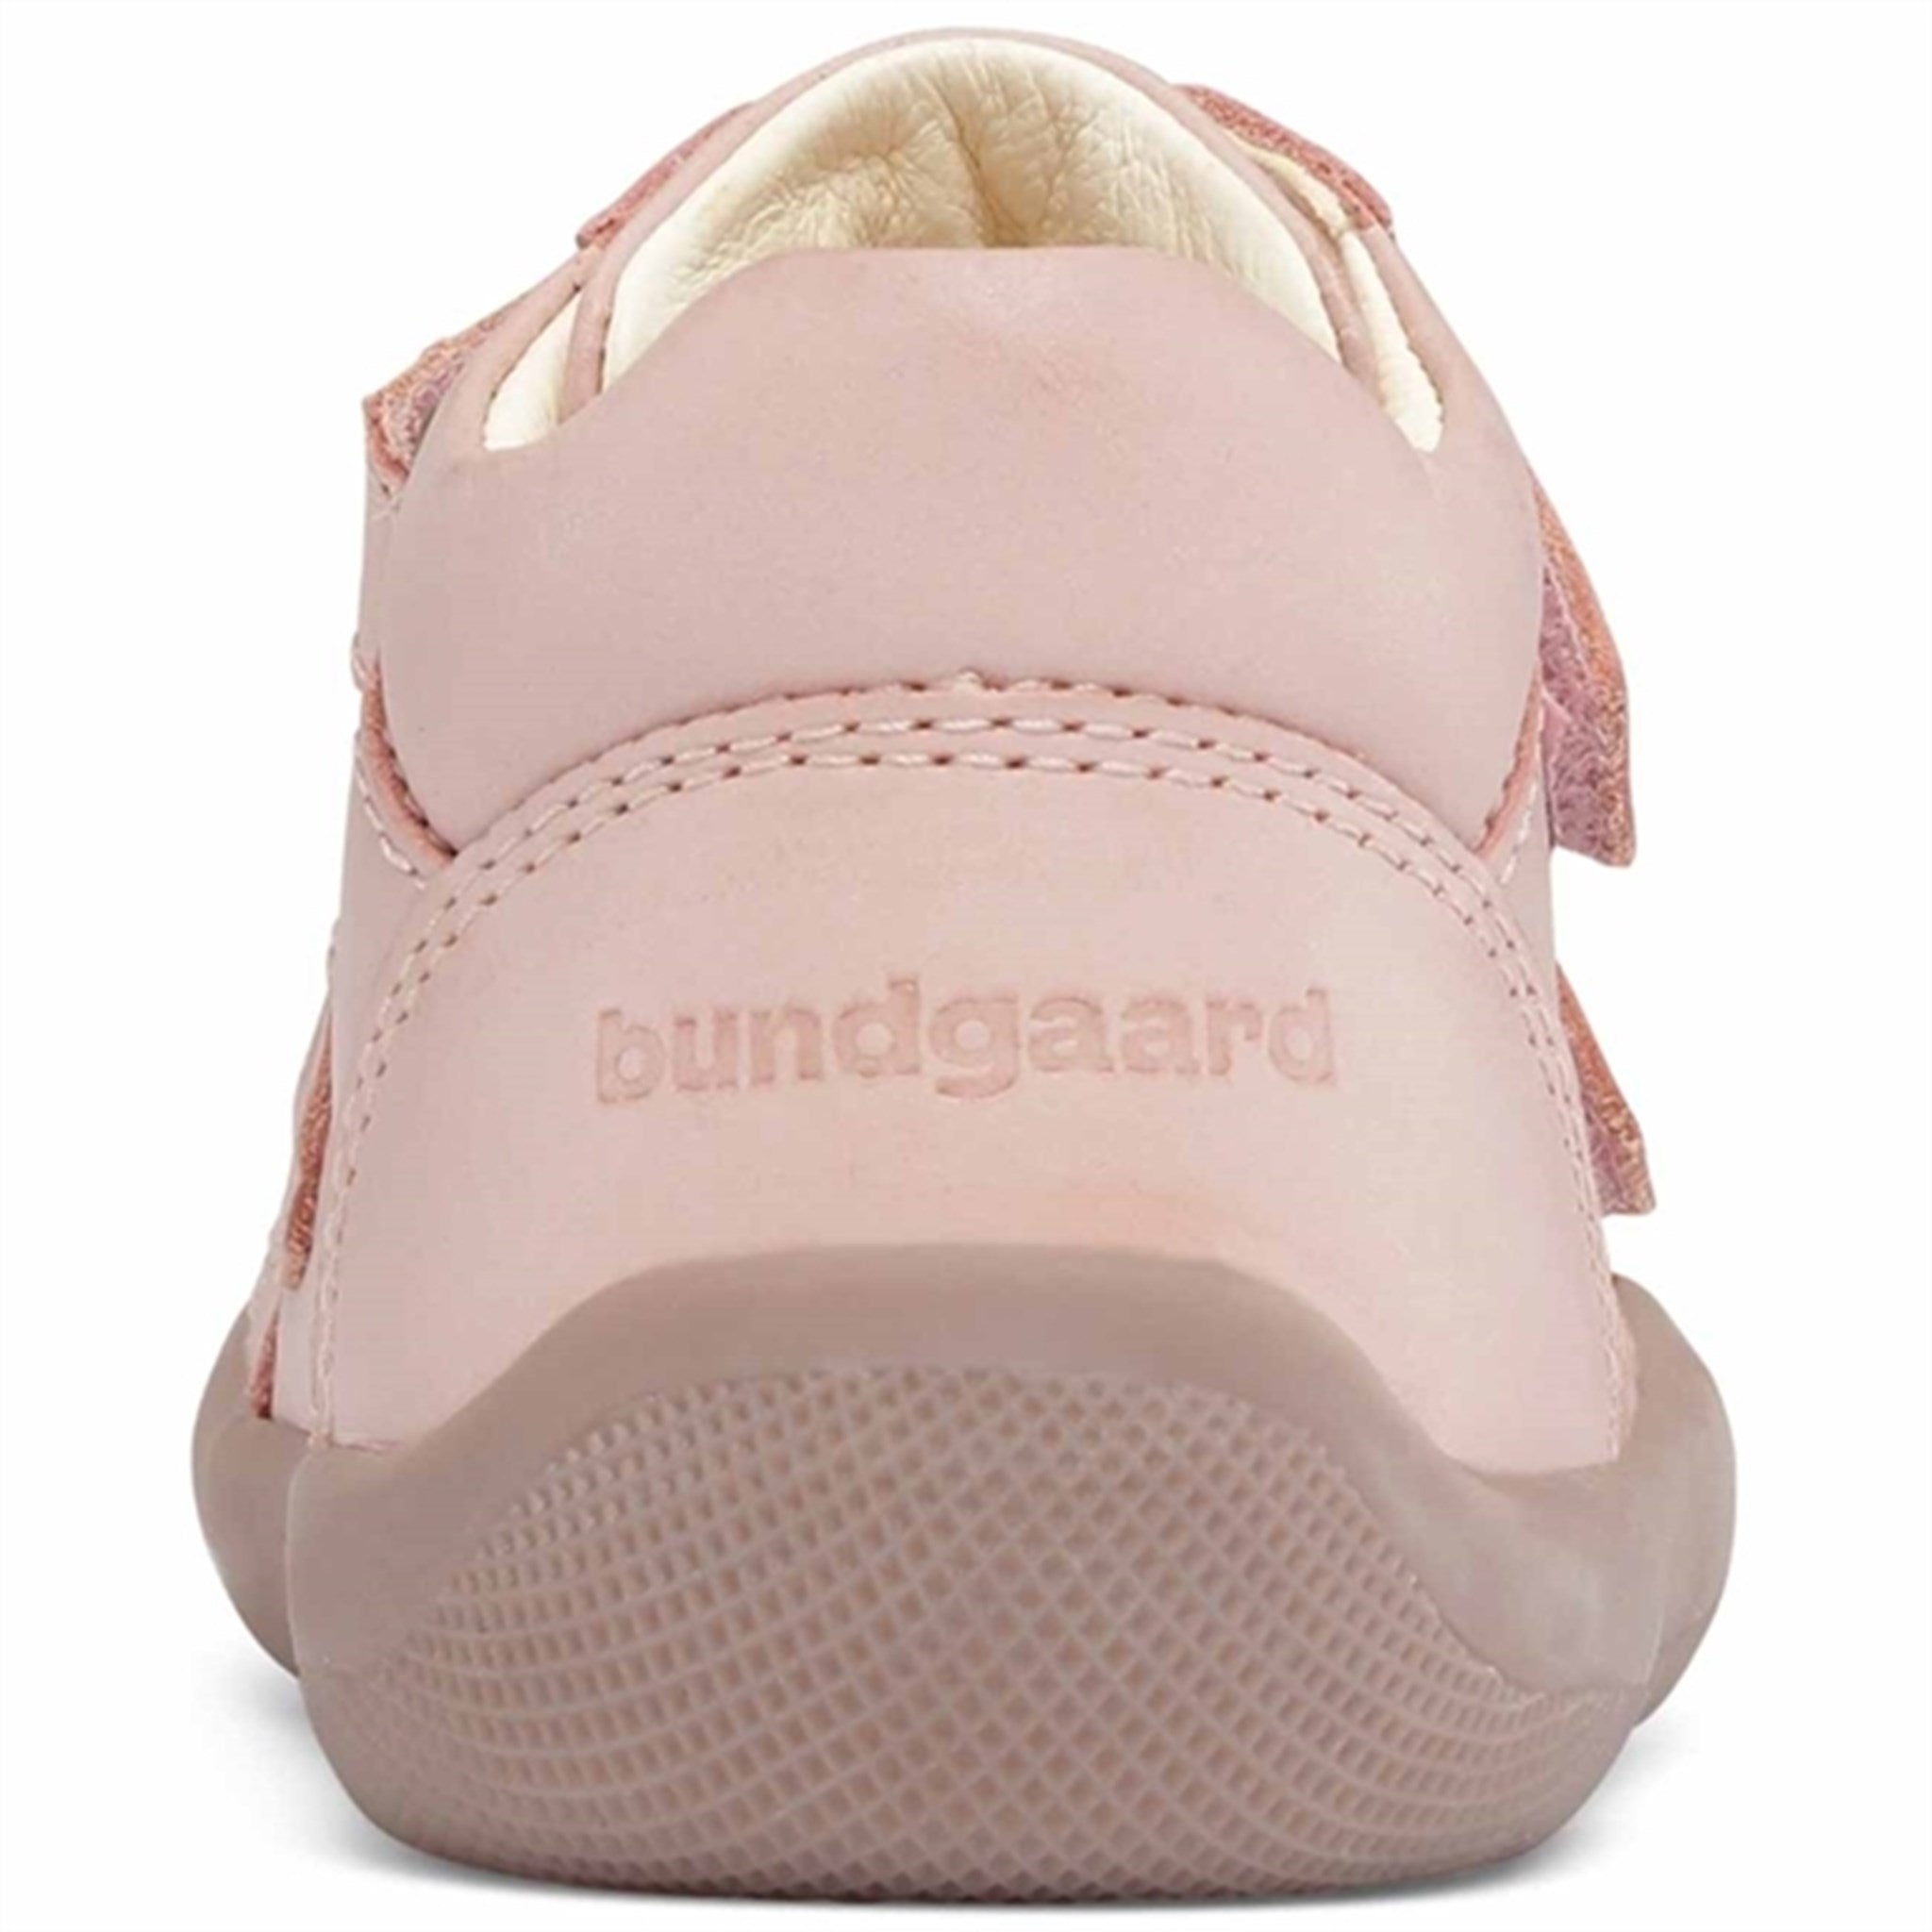 Bundgaard The Walk Velcro Shoes Old Rose 3